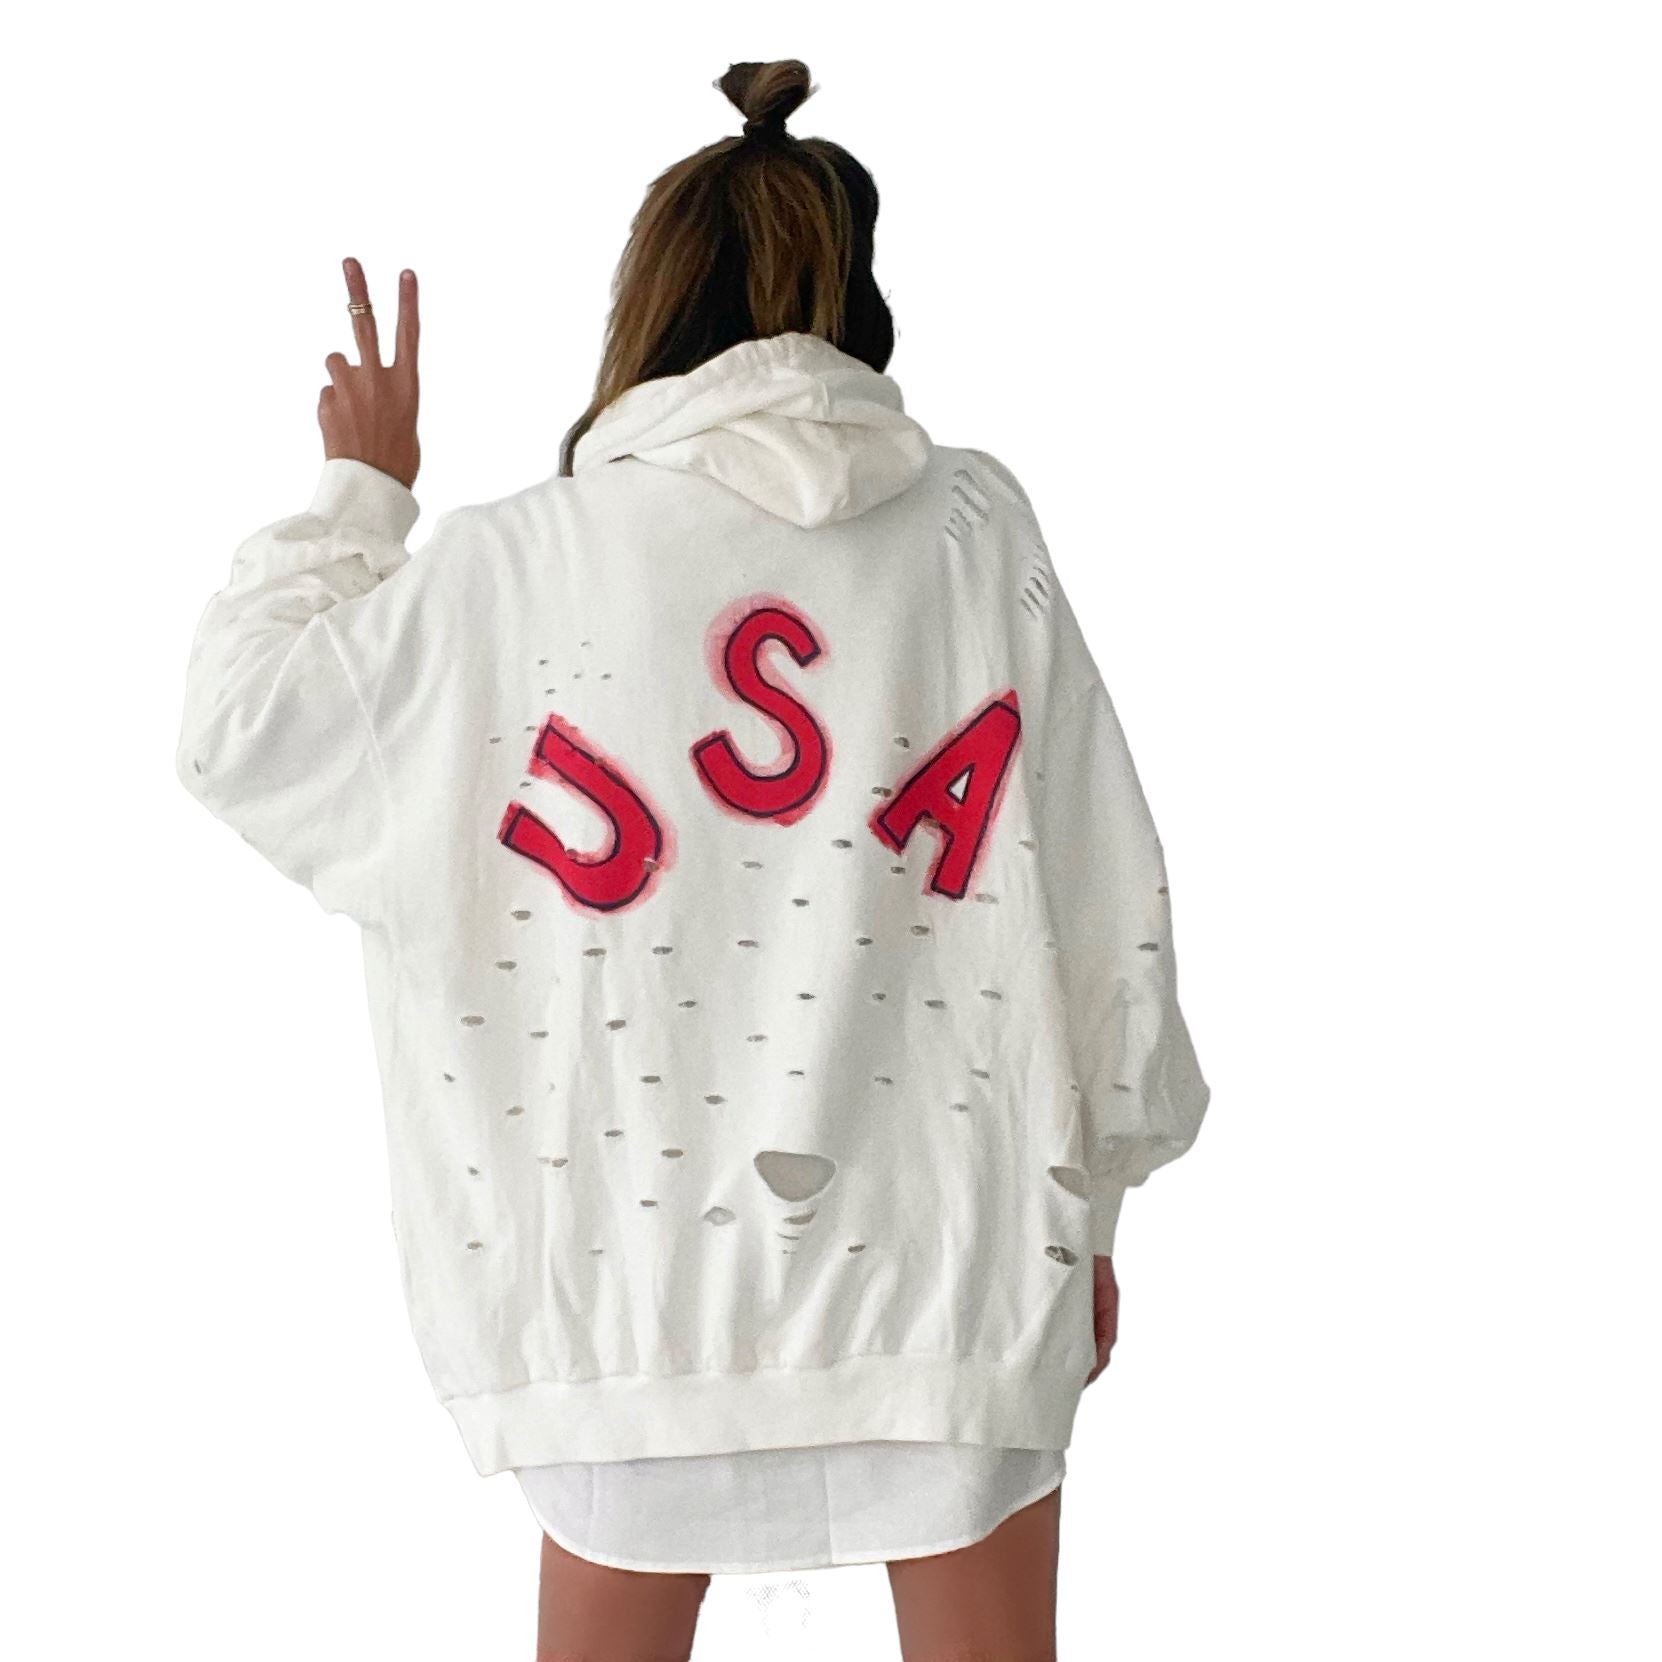 'USA USA USA' Painted Hoodie